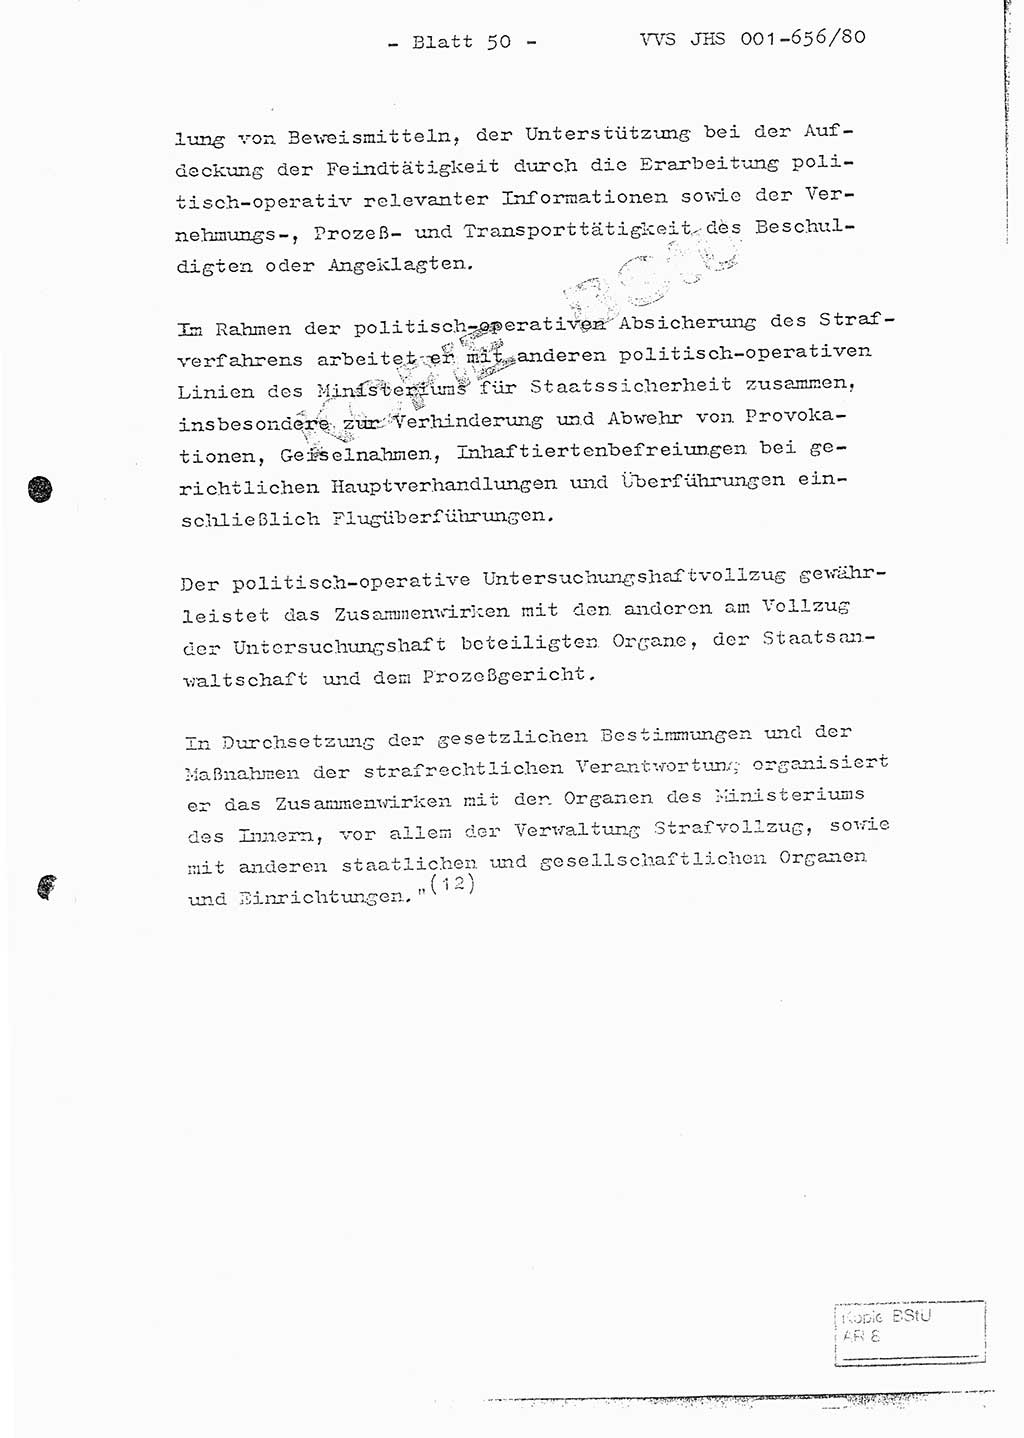 Fachschulabschlußarbeit Unterleutnant Christian Kätzel (Abt. ⅩⅣ), Ministerium für Staatssicherheit (MfS) [Deutsche Demokratische Republik (DDR)], Juristische Hochschule (JHS), Vertrauliche Verschlußsache (VVS) 001-656/80, Potsdam 1980, Blatt 50 (FS-Abschl.-Arb. MfS DDR JHS VVS 001-656/80 1980, Bl. 50)